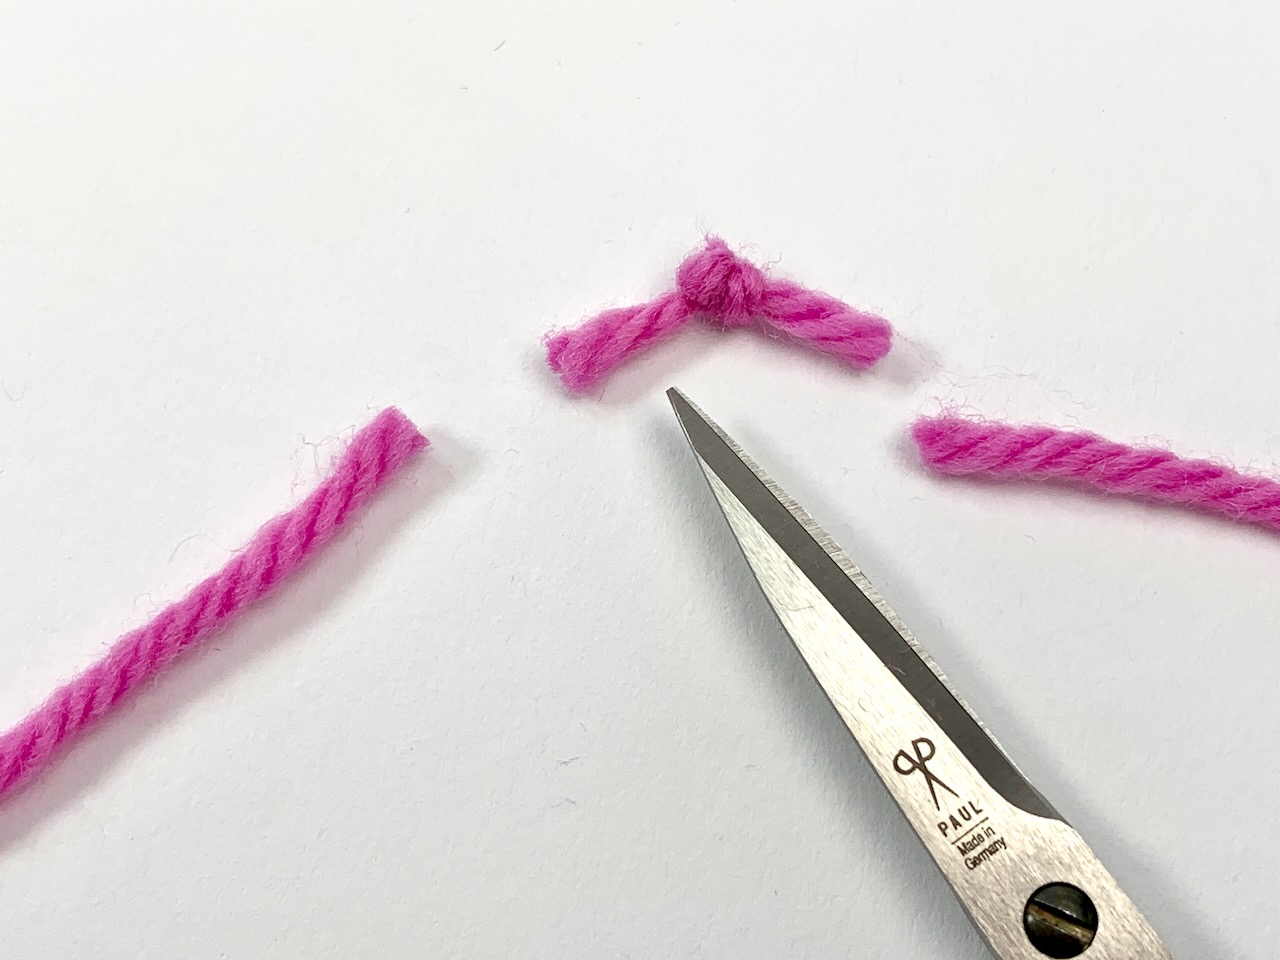 Knoten im Knäuel sollte herausgeschnitten und neu angesetzt werden.